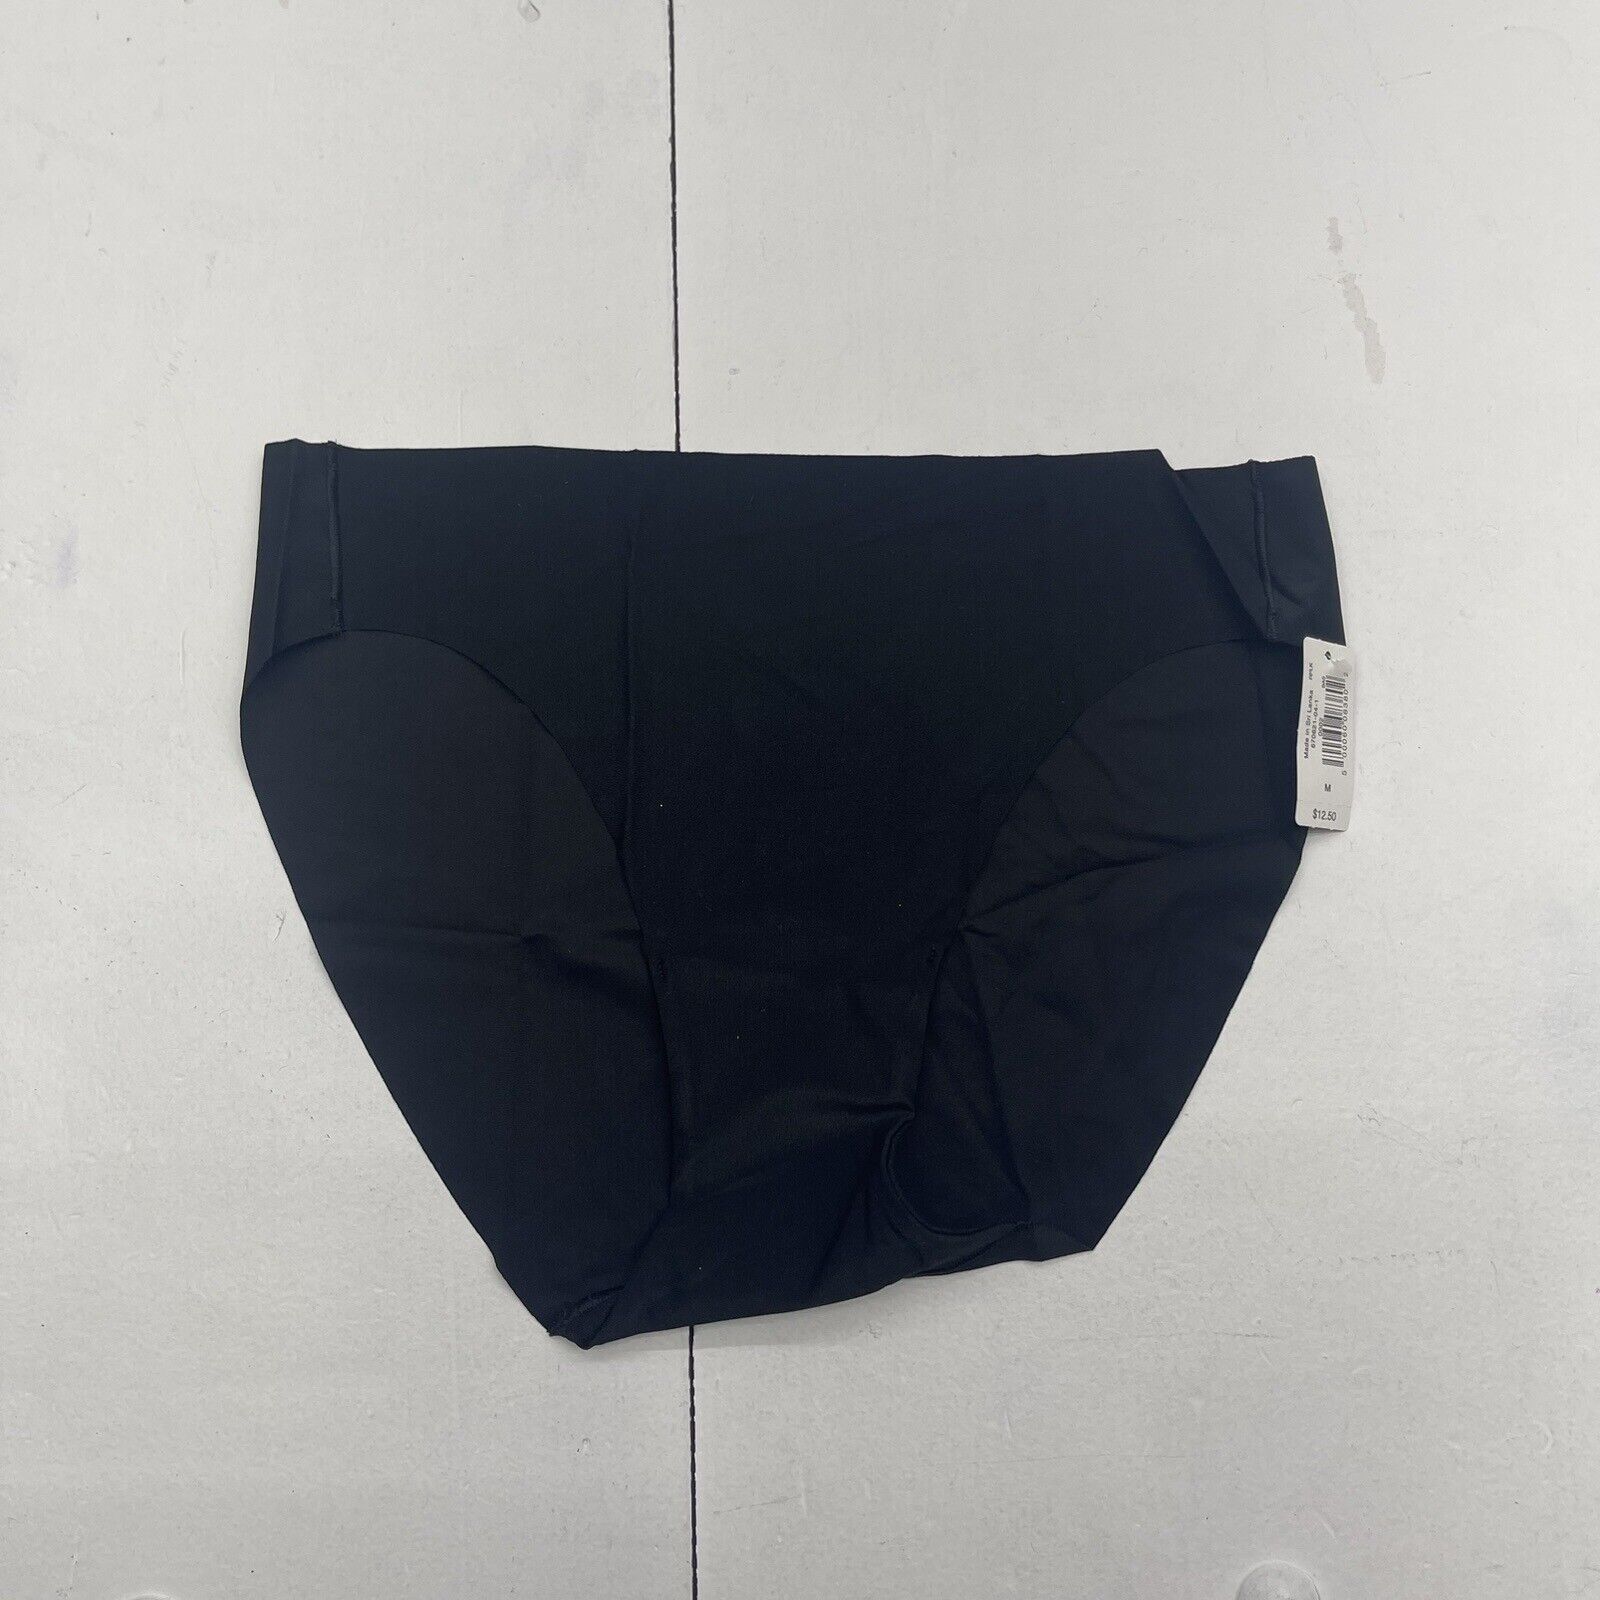 Gap Black No Show Bikini Underwear Women's Size Medium New - beyond exchange